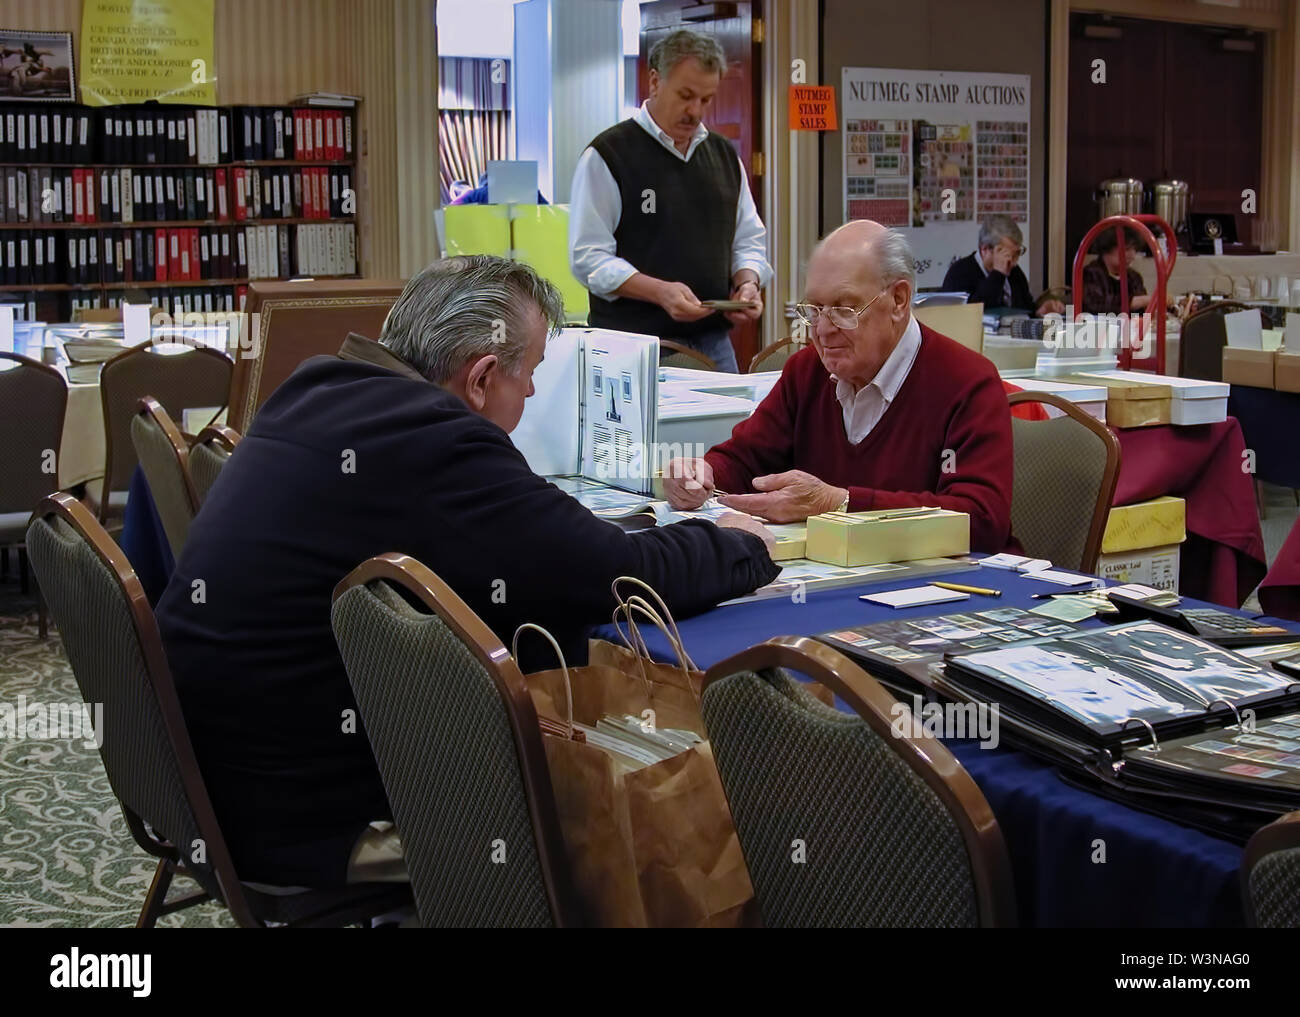 Cromwell, CT USA. Mar 2015. Deux hommes âgés de parler et de traiter les uns avec les autres sur les métiers et des achats à un événement vente aux enchères de timbres. Banque D'Images